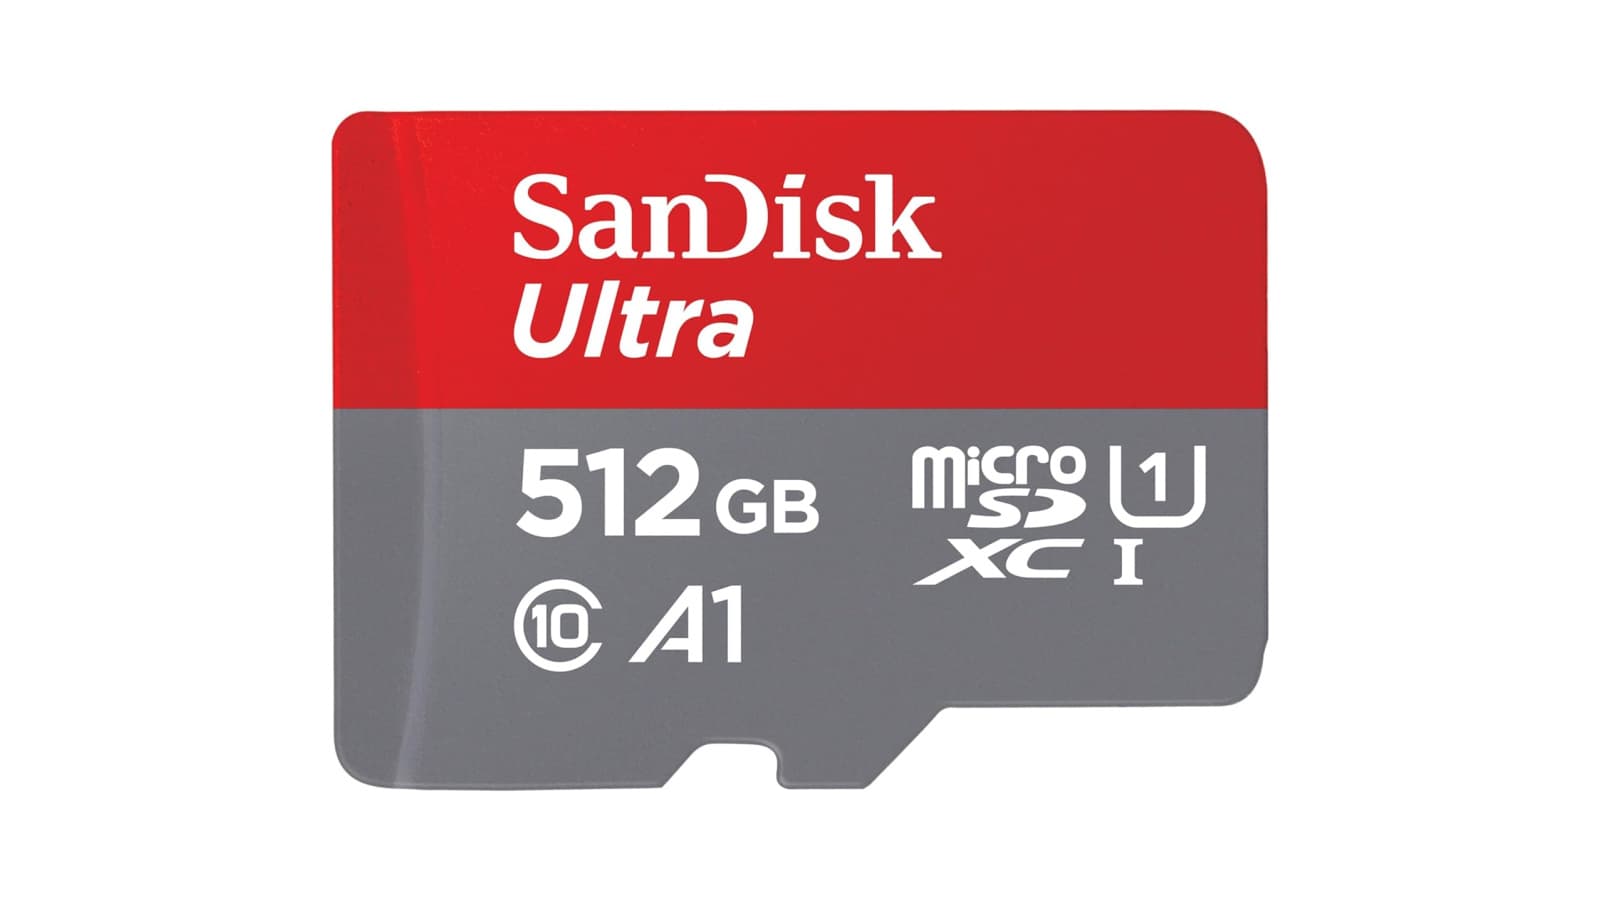 Obtenga esta microSD SanDisk Ultra de 512 GB por $ 26